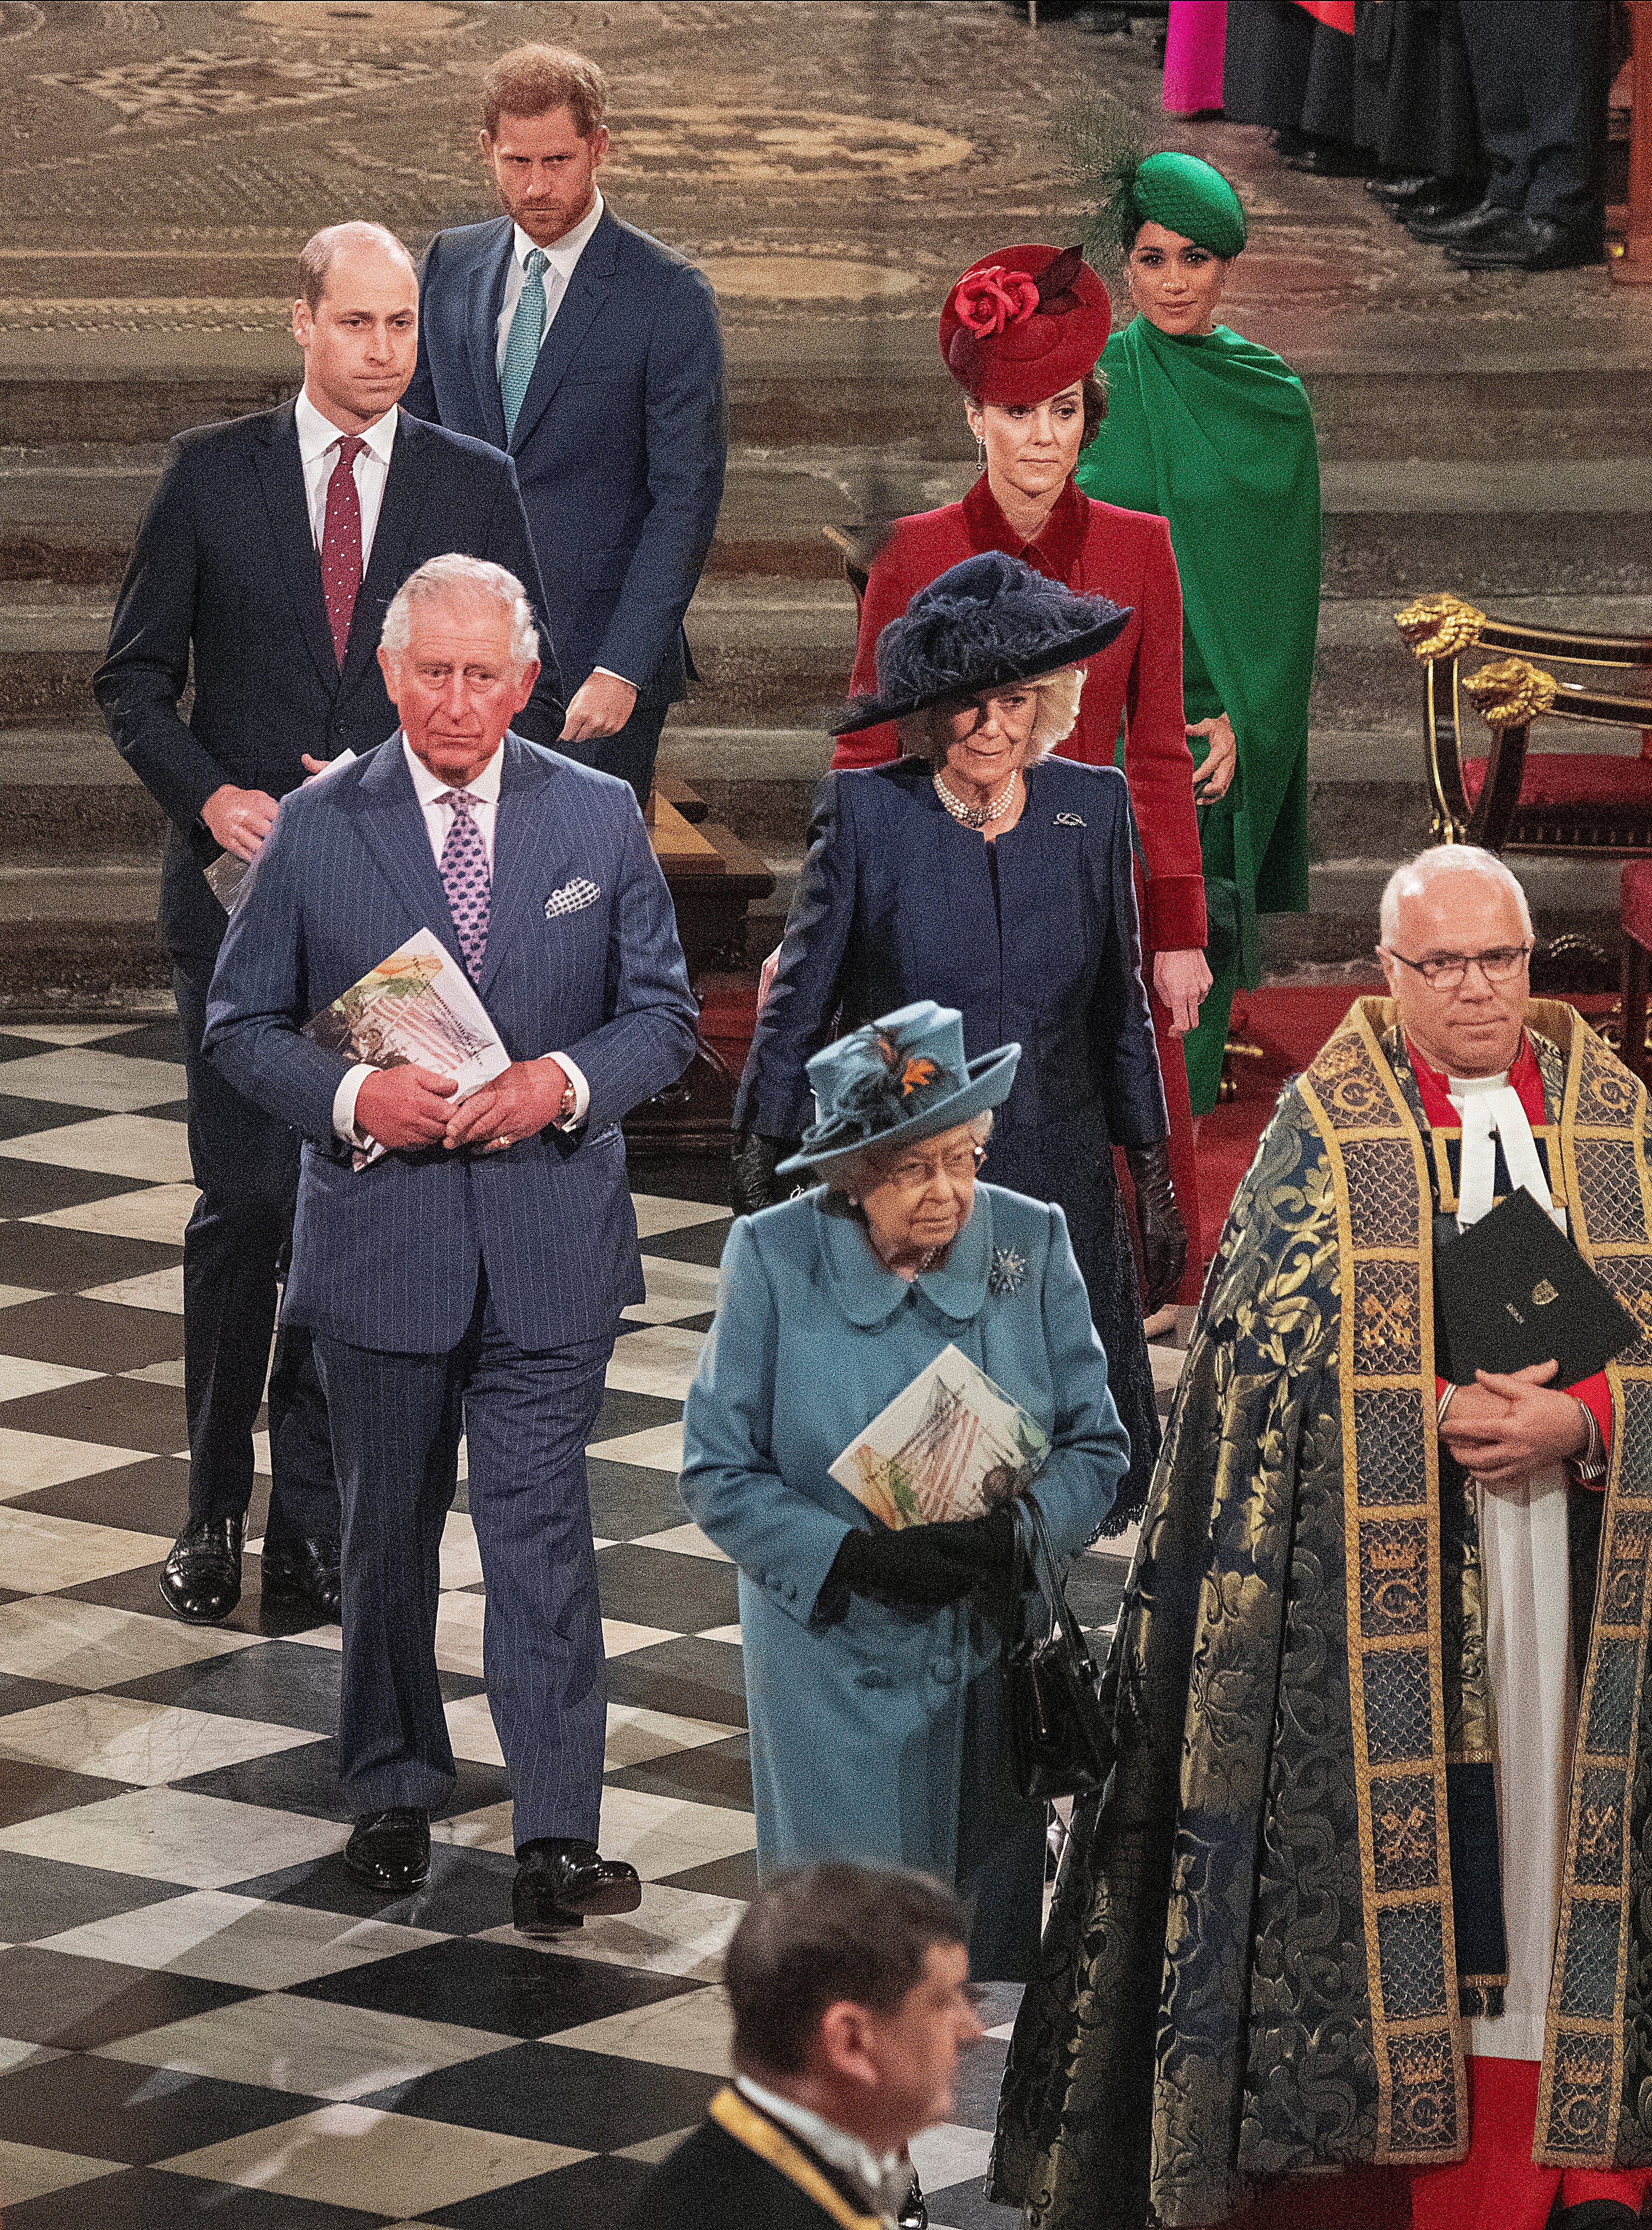 La familia real en el Día de la Commonwealth 2020, el último compromiso público oficial de los Sussex antes de dejar de ser miembros activos de la realeza (Phil Harris/Daily Mirror/PA)